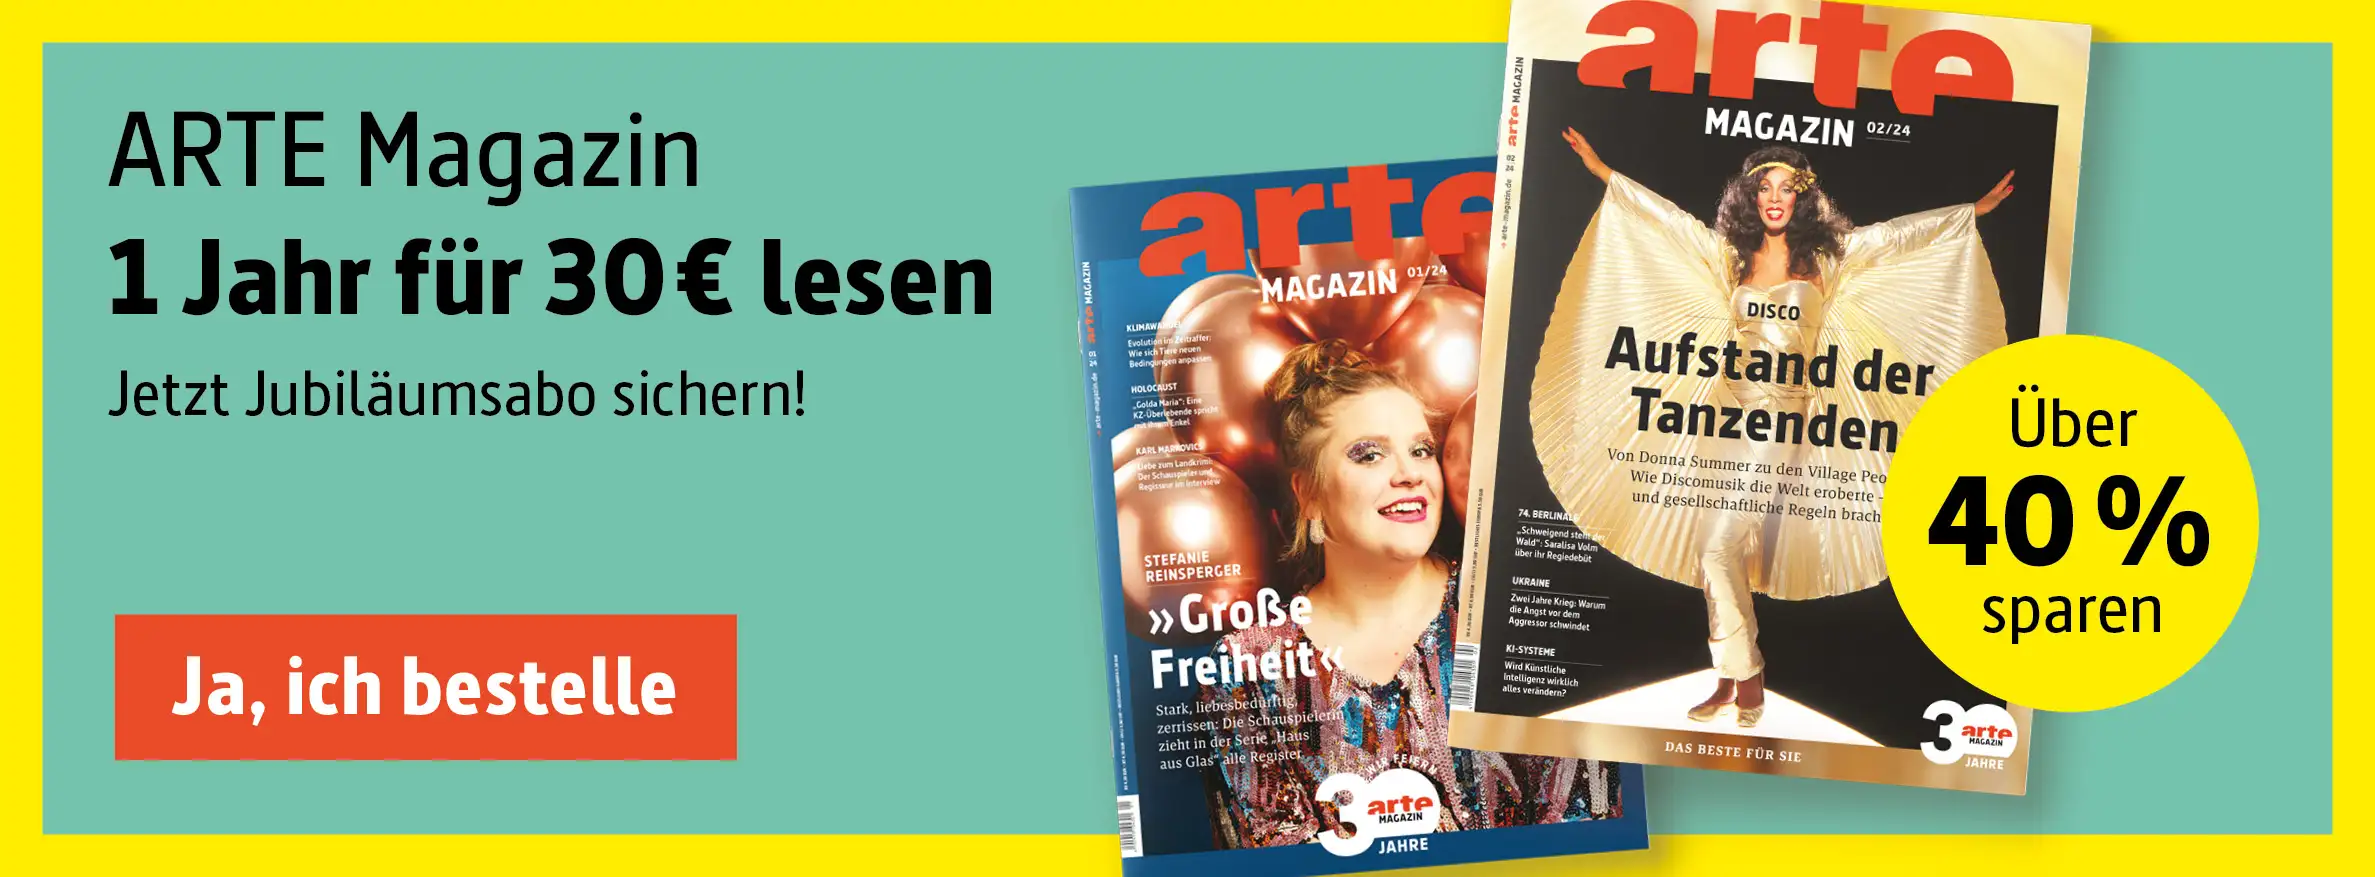 Voll Farben und Sünden – ARTE Magazin Aboshop